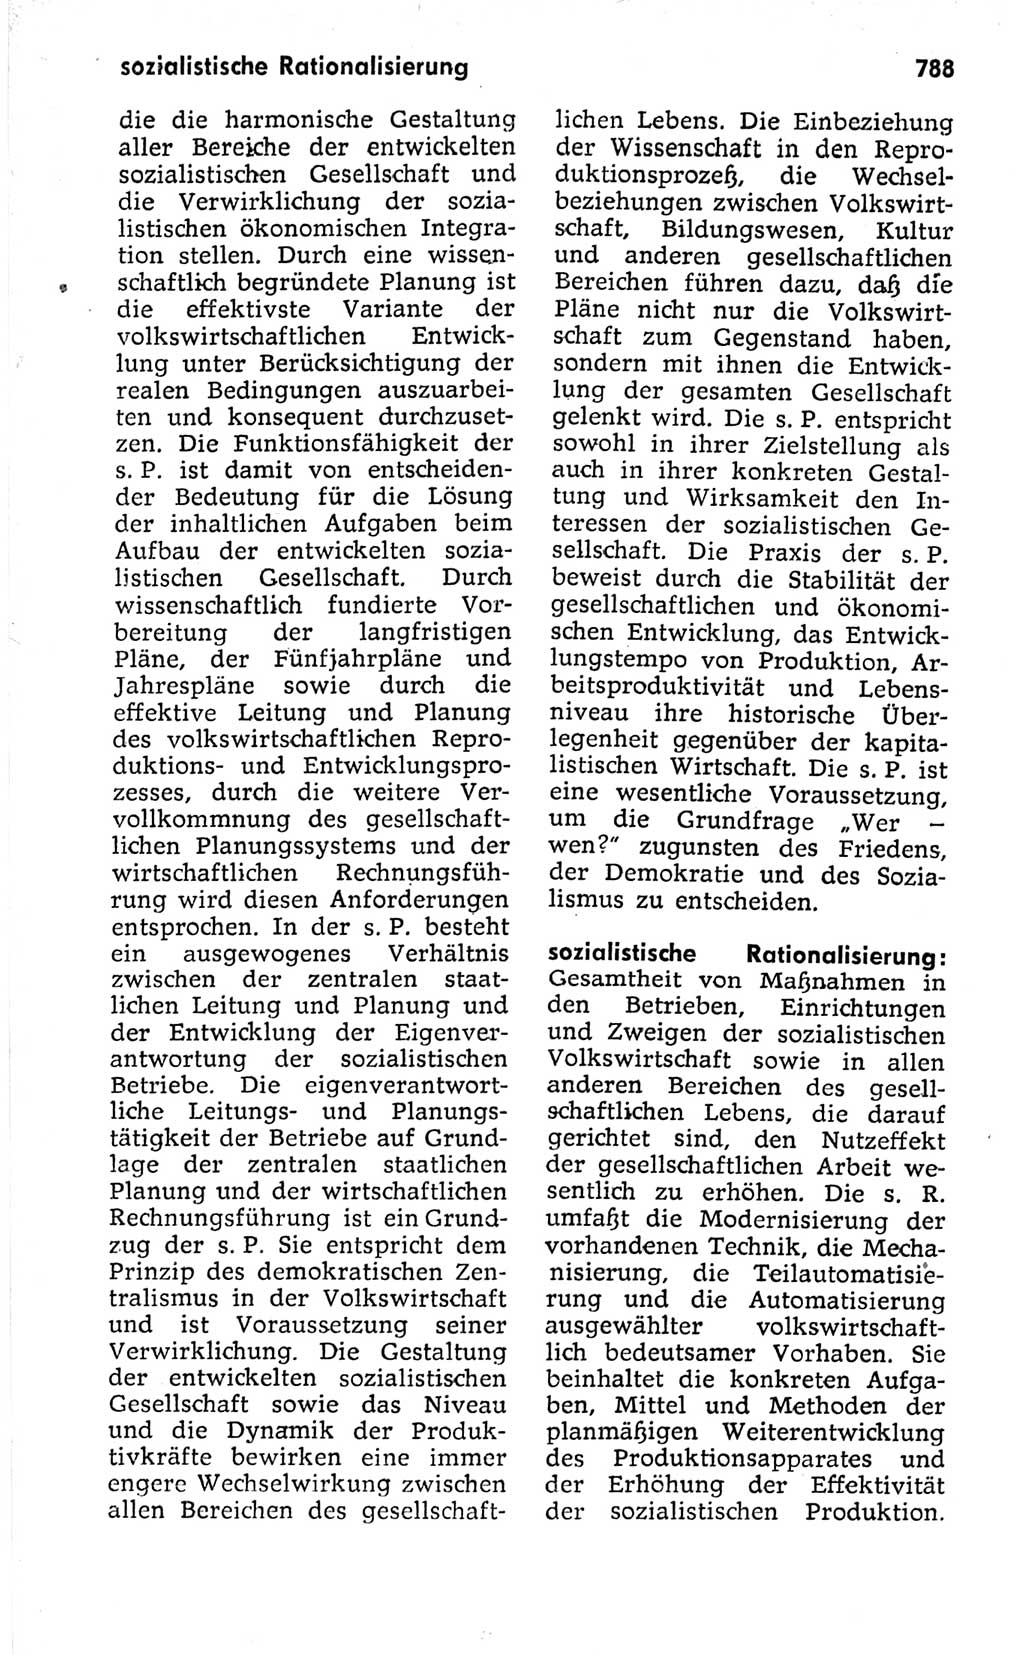 Kleines politisches Wörterbuch [Deutsche Demokratische Republik (DDR)] 1973, Seite 788 (Kl. pol. Wb. DDR 1973, S. 788)